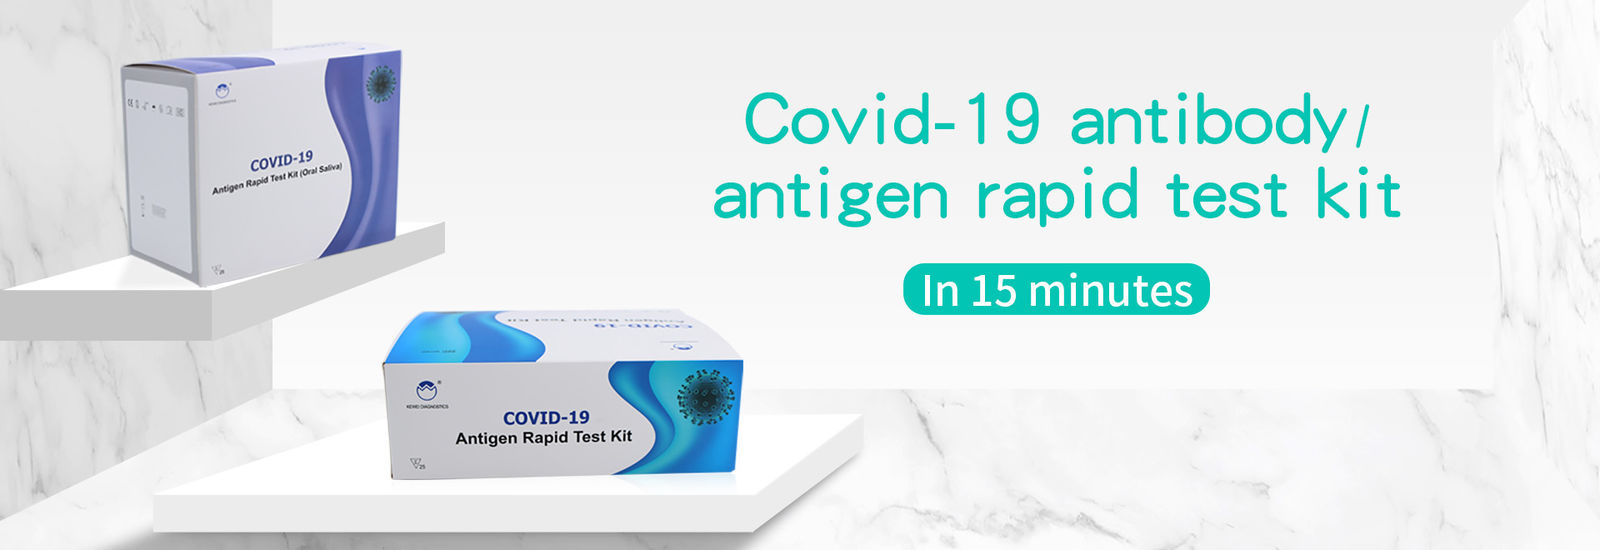 Corredo rapido della prova dell'antigene Covid-19